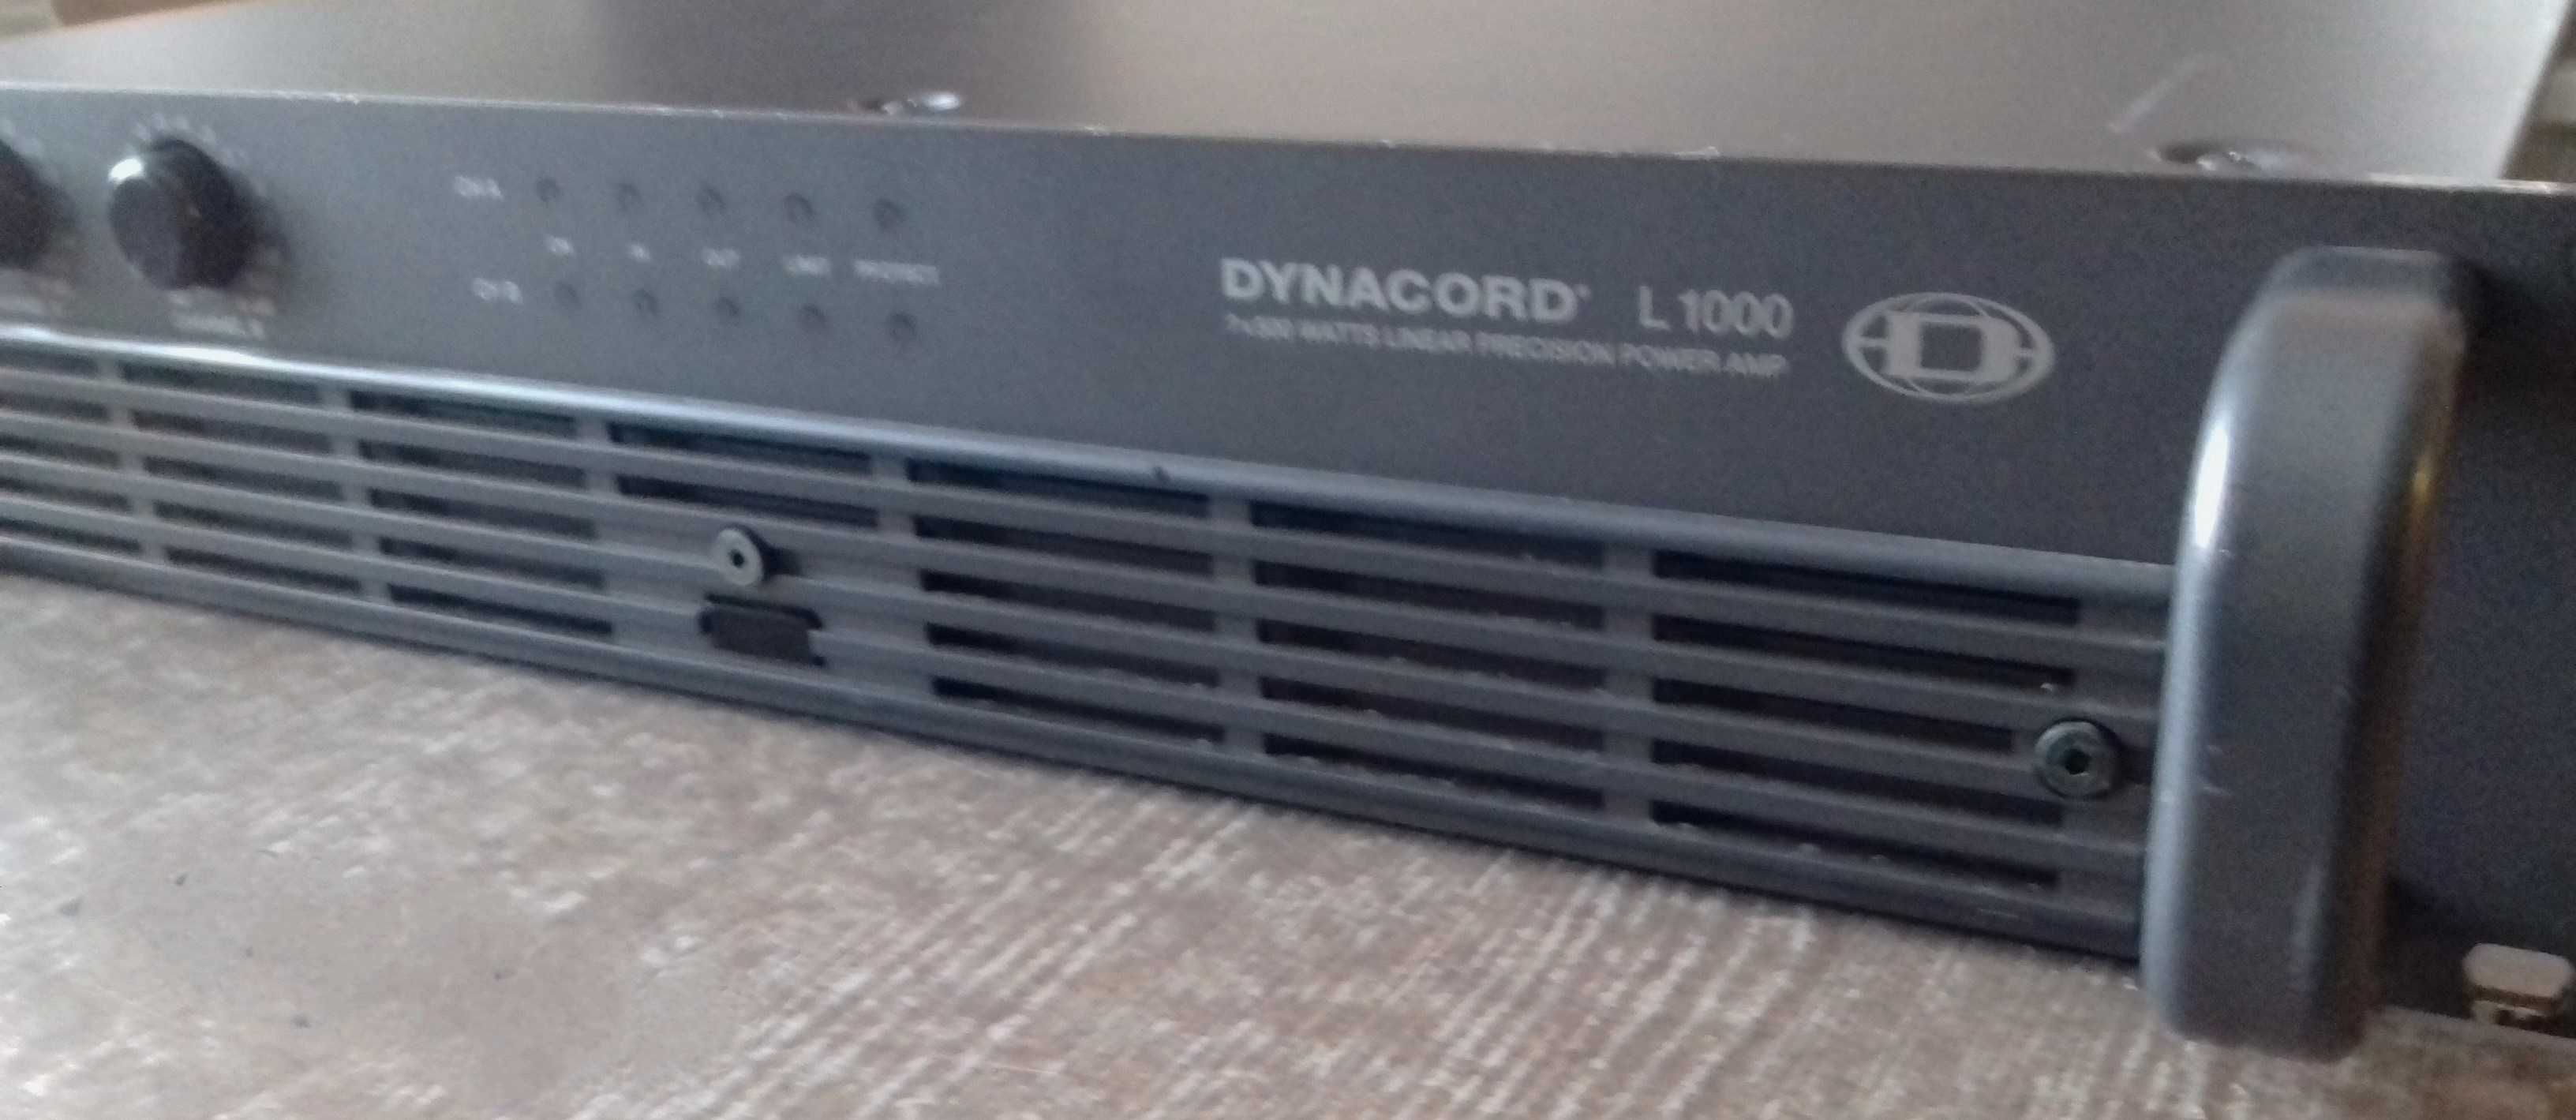 Dynacord L1000 końcówka mocy